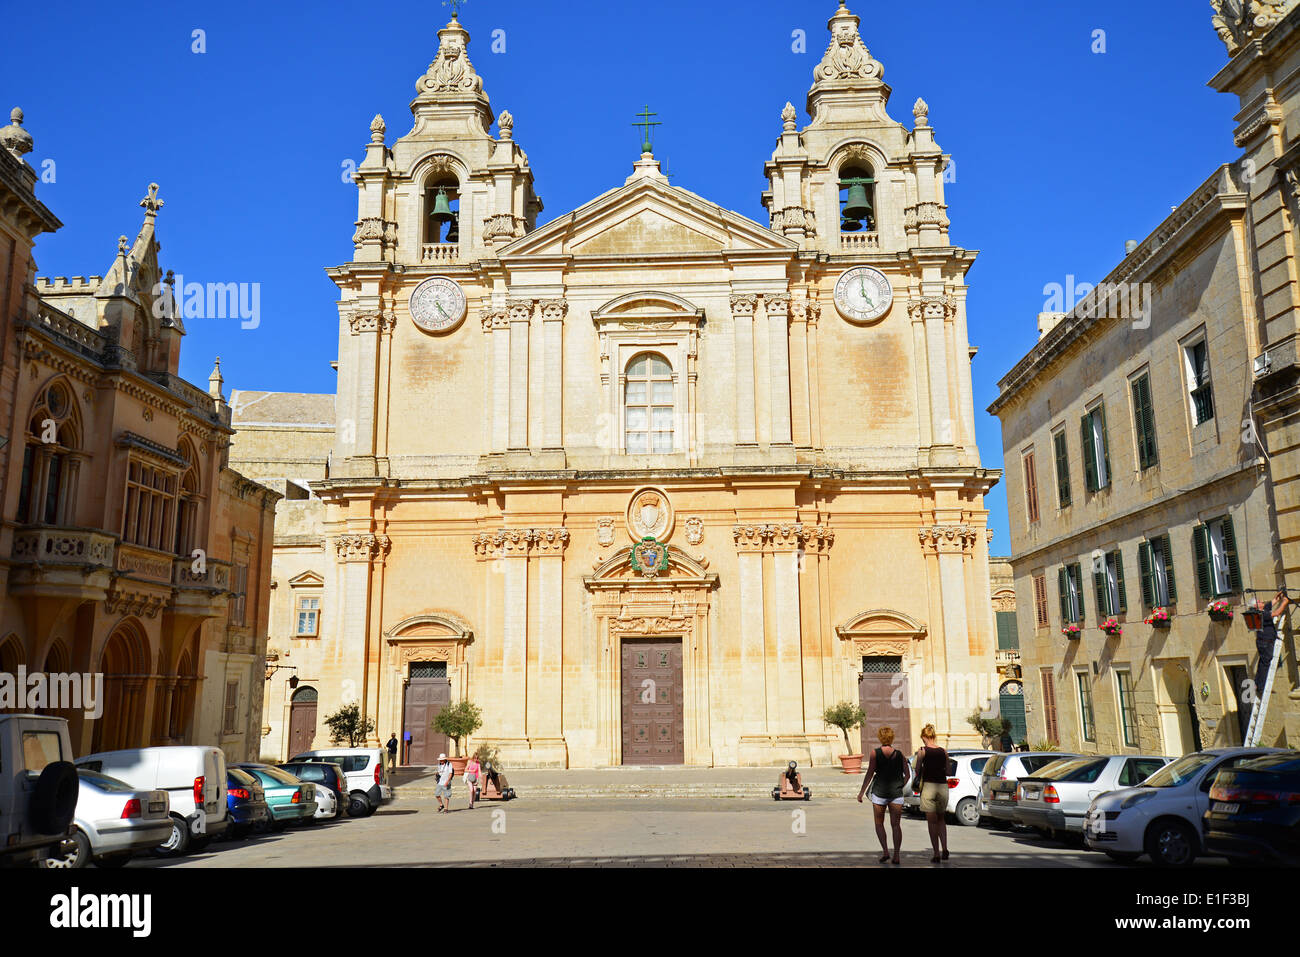 St Paul's Cathedral, Piazza San Pawl, Mdina (Città Vecchia), District de l'Ouest, Malte Majjistral Région, République de Malte Banque D'Images